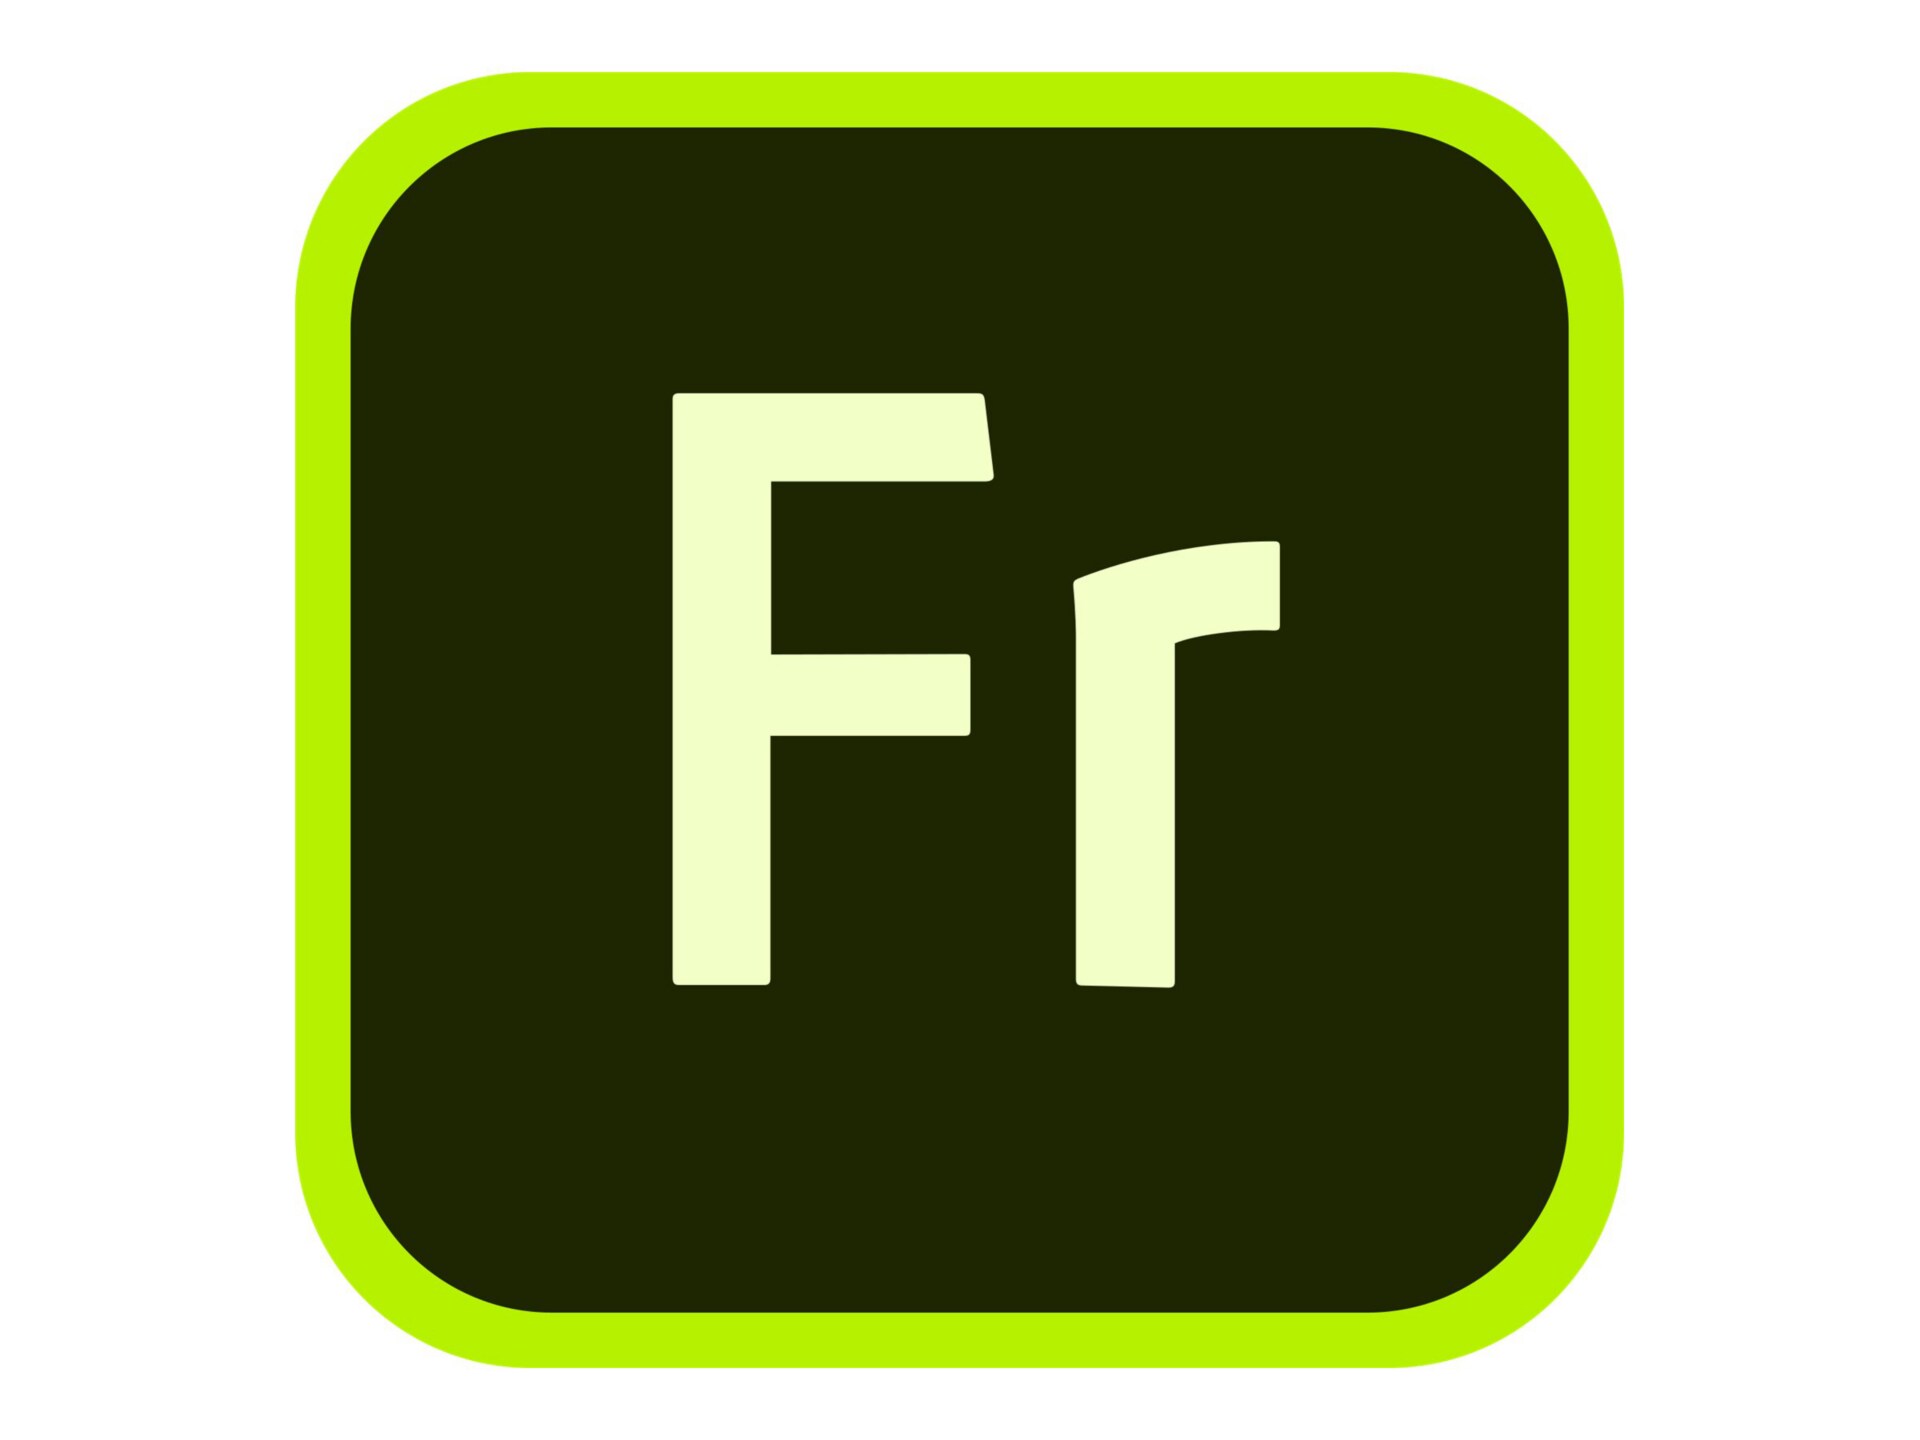 Adobe Fresco for enterprise - Subscription New (45 months) - 1 named user